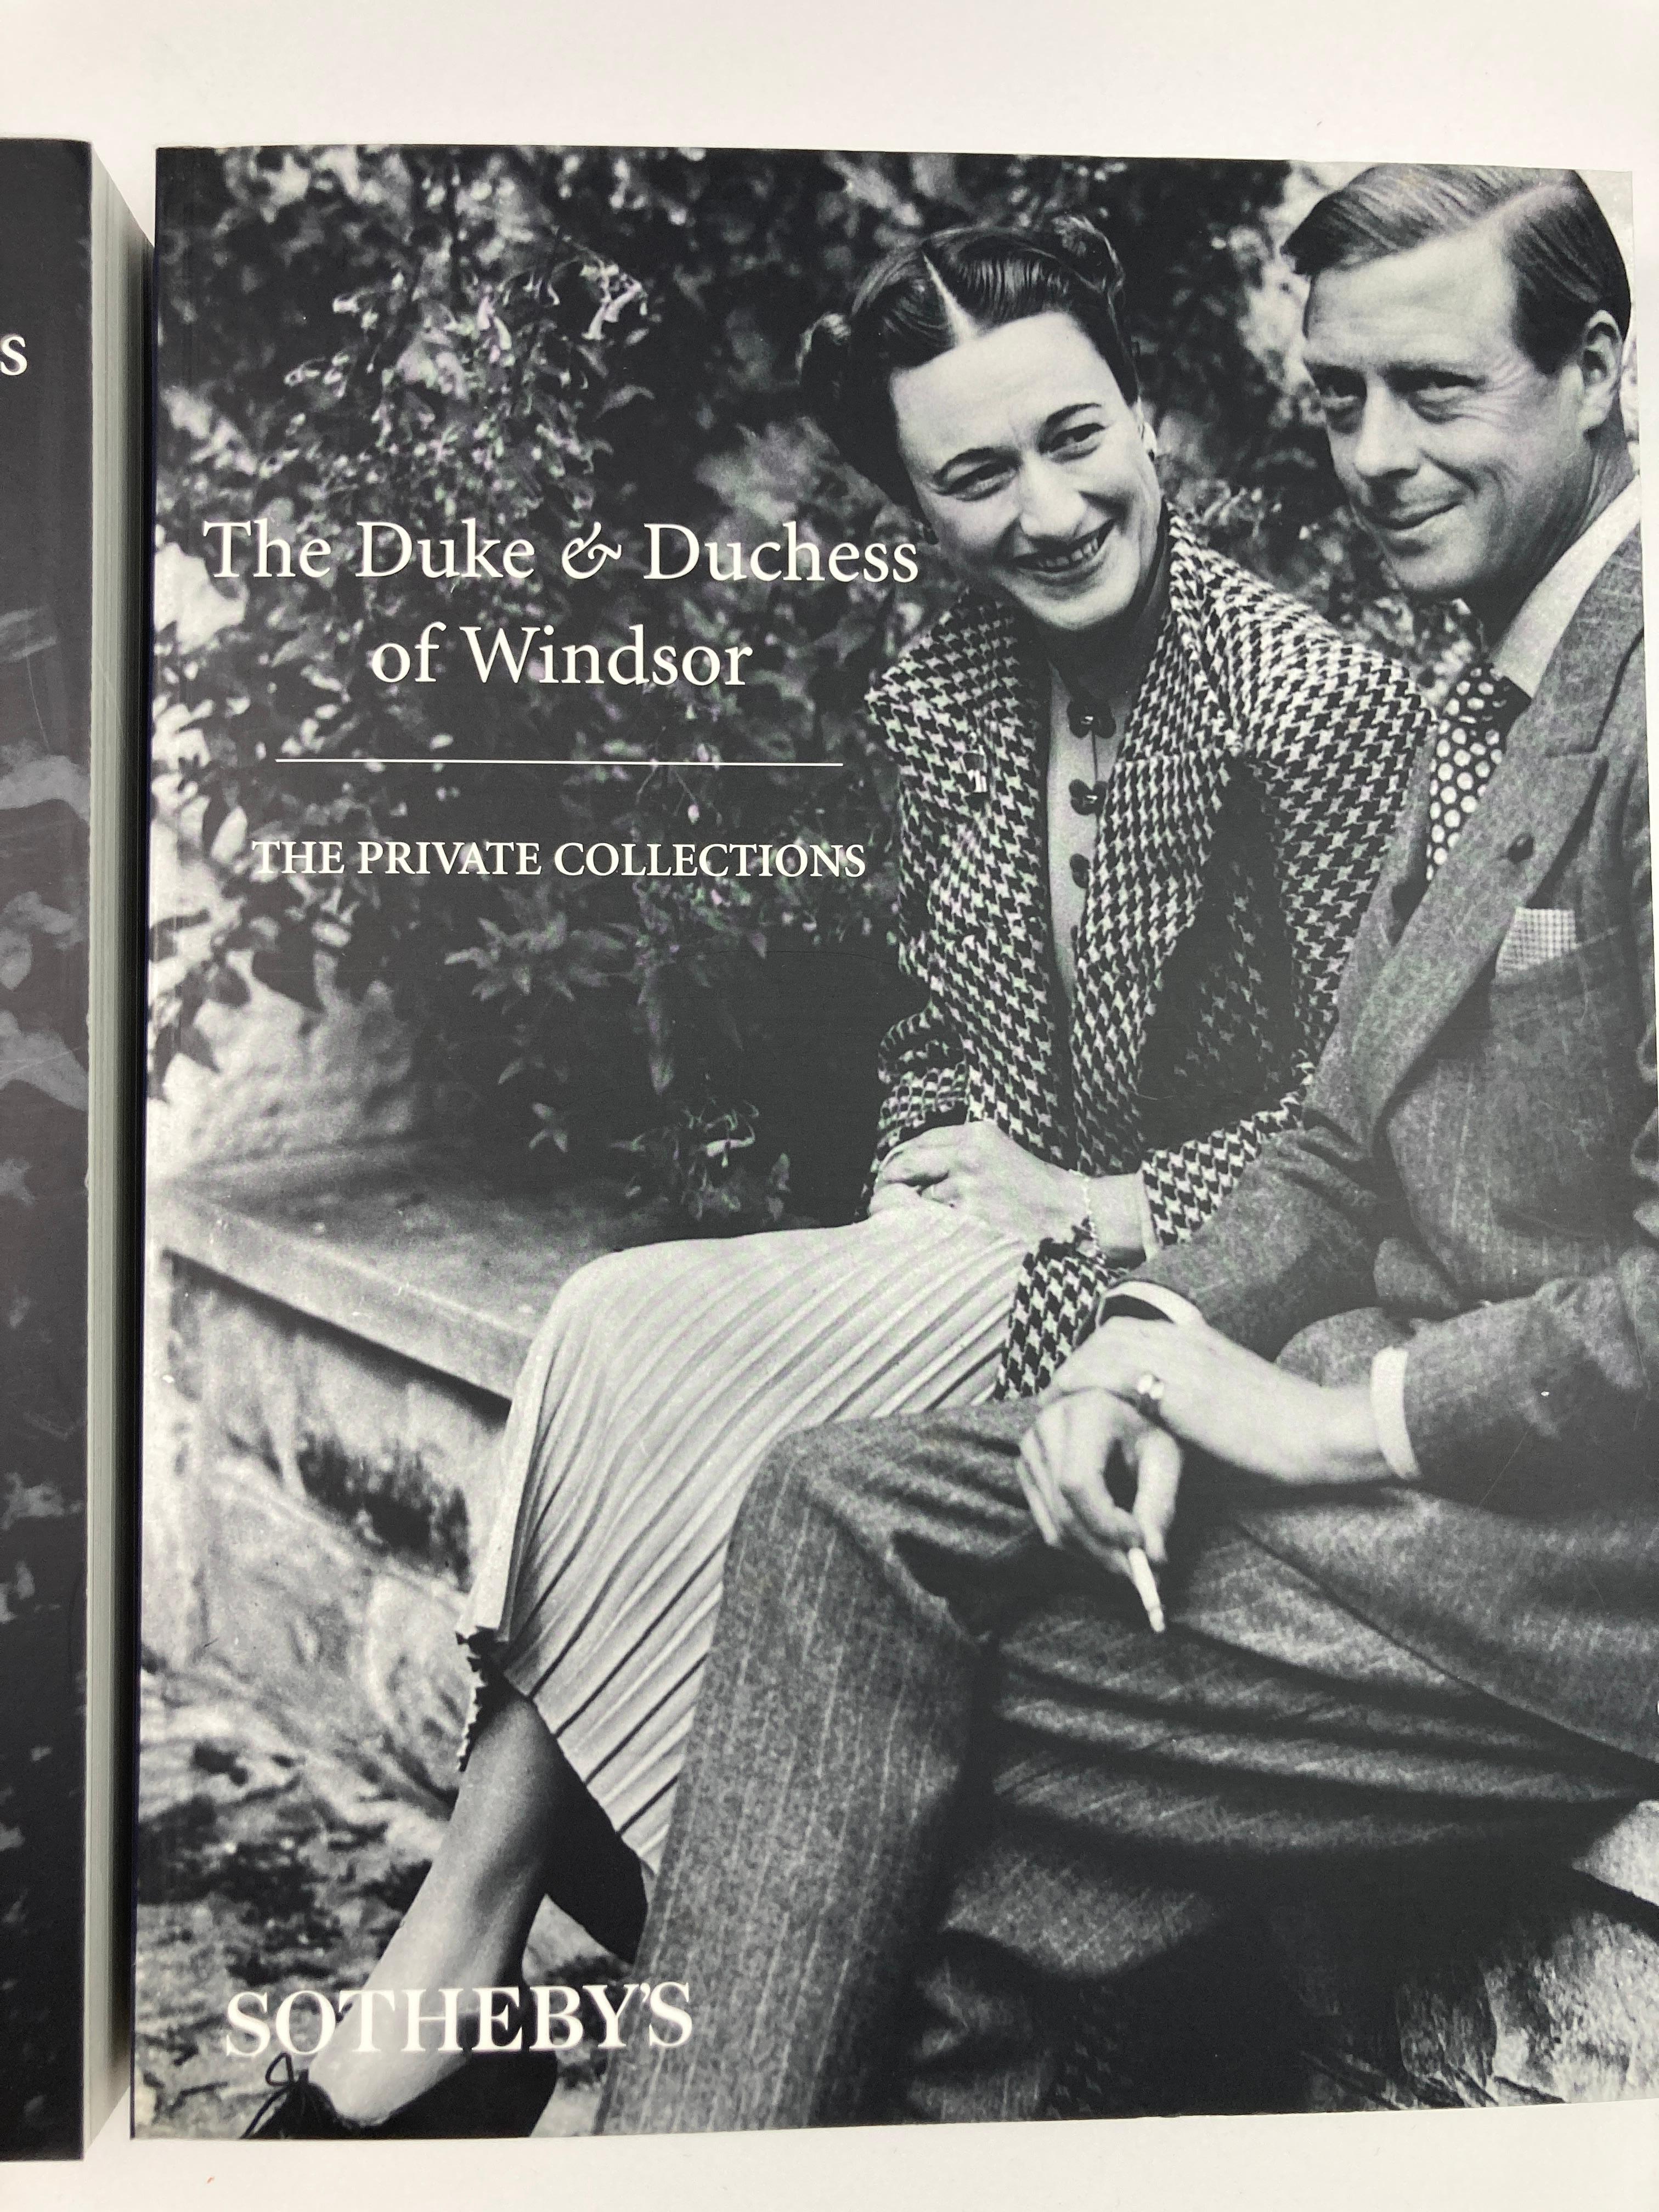 The Duke and Duchess of Windsor Auction Sotheby's Books Catalogs in Slipcase Box (Le duc et la duchesse de Windsor, ventes aux enchères, catalogues de livres de Sotheby's dans une boîte) en vente 7